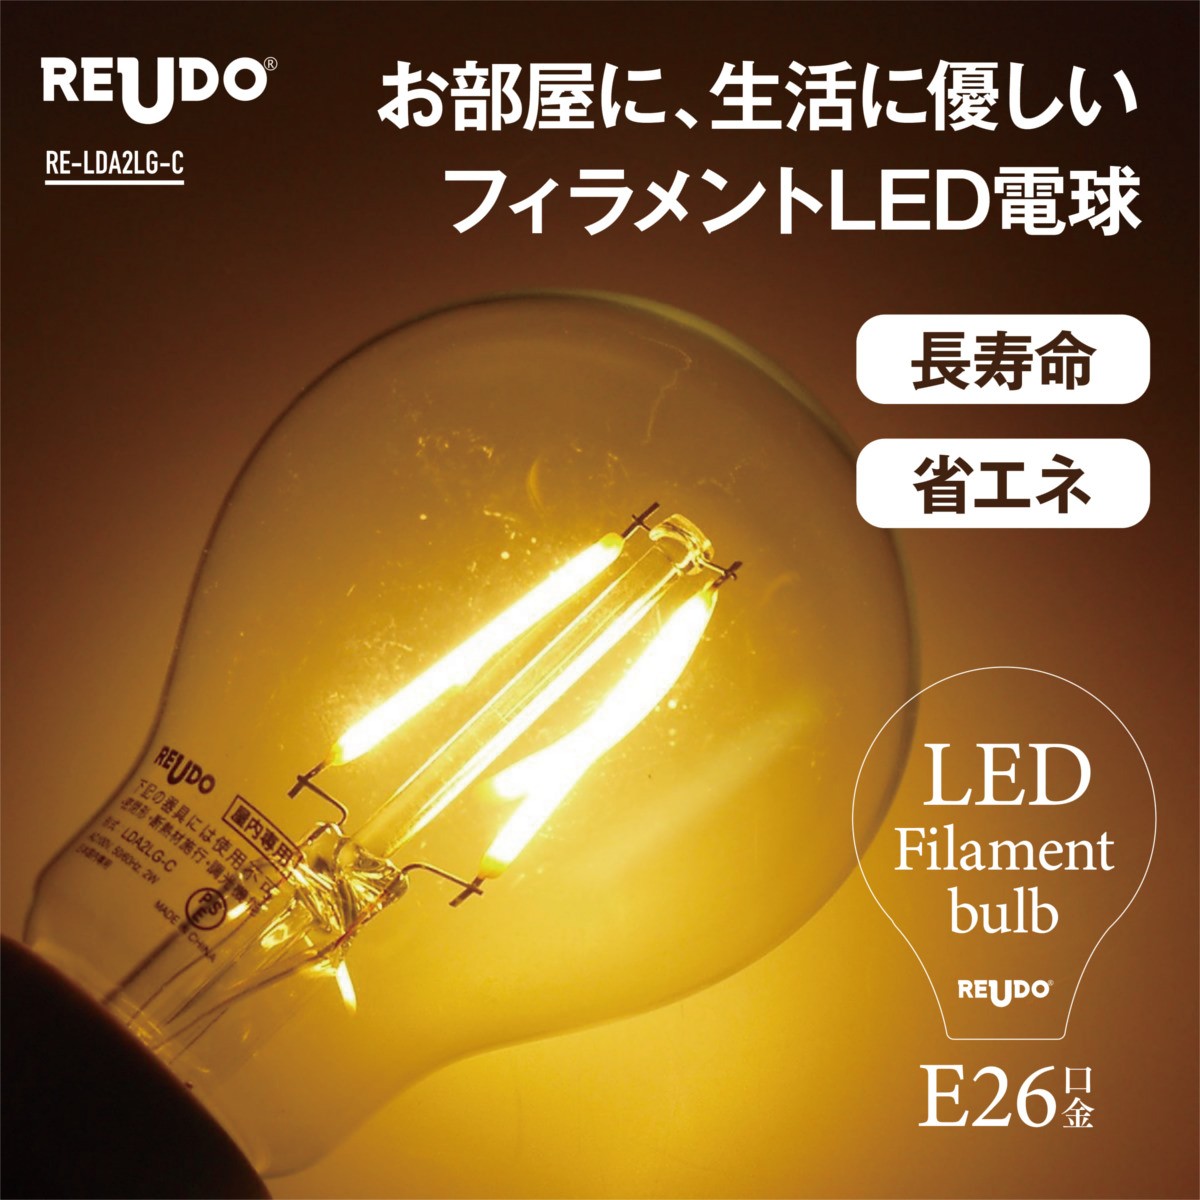 LEDフィラメント電球 全光束230lm 消費電力2W 1個単品